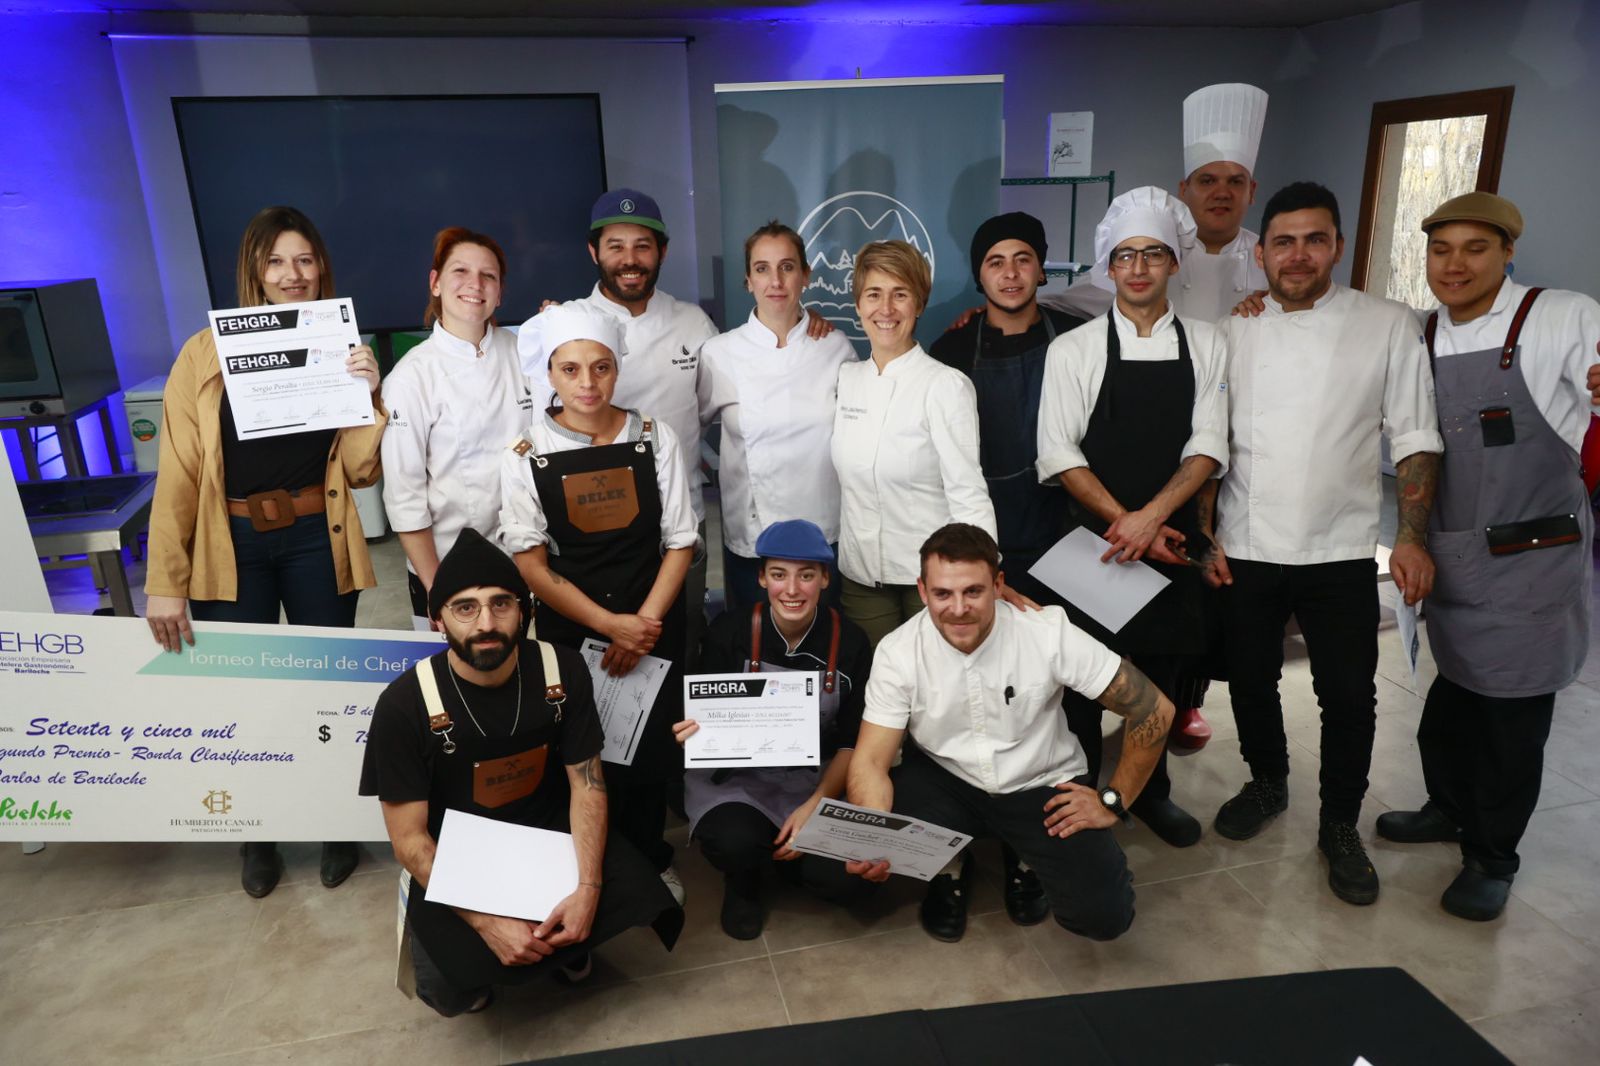 Bariloche ya tiene sus representantes en el Torneo Federal de Chefs